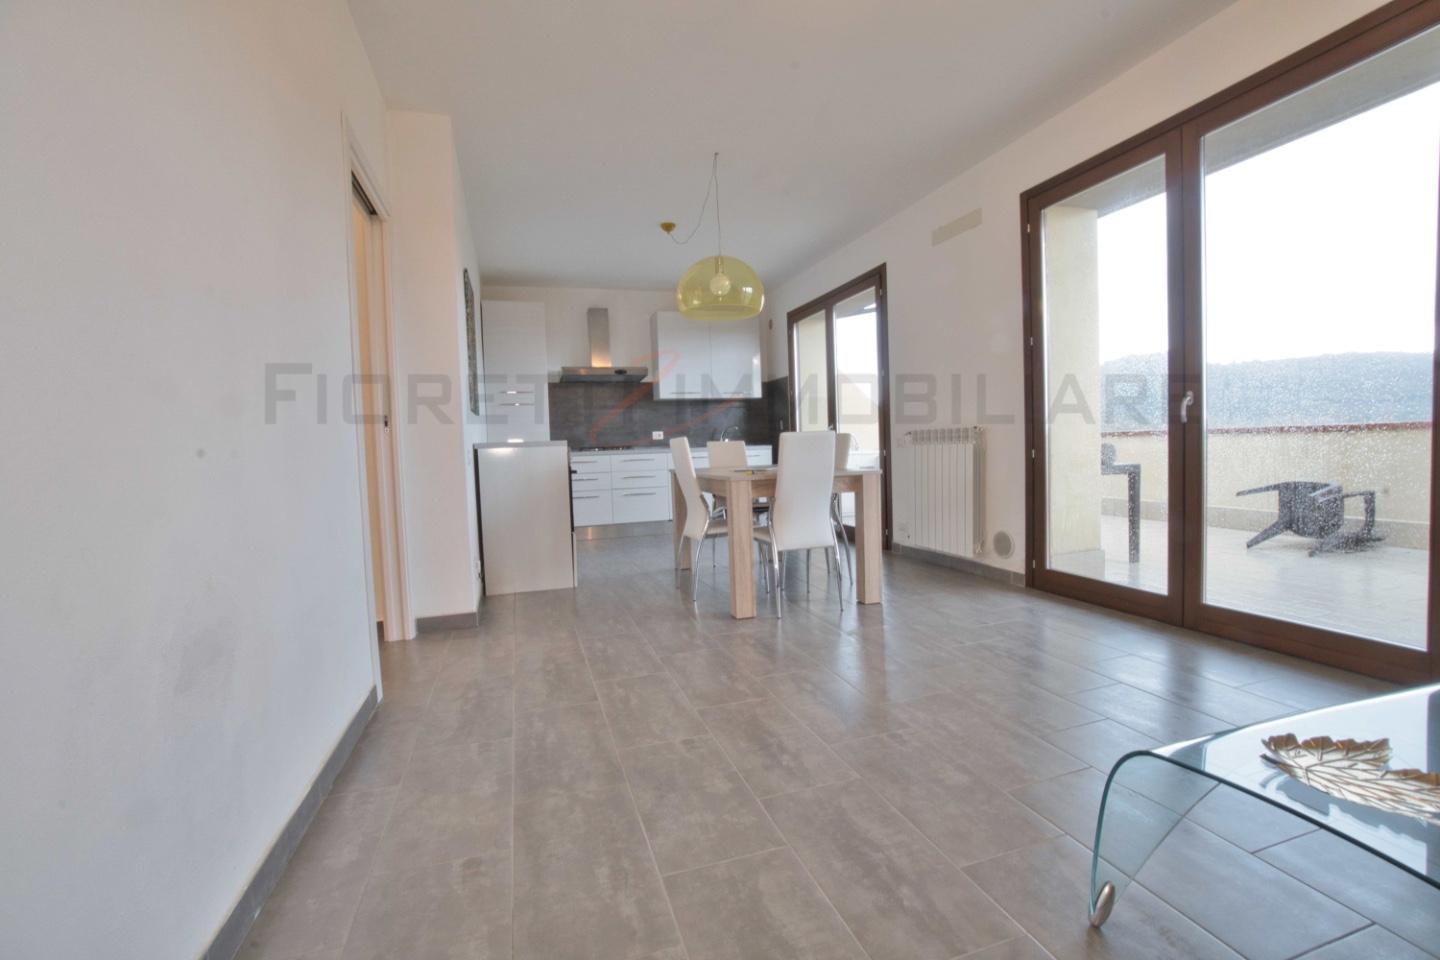 Appartamento in vendita a Suvereto, 3 locali, prezzo € 175.000 | PortaleAgenzieImmobiliari.it